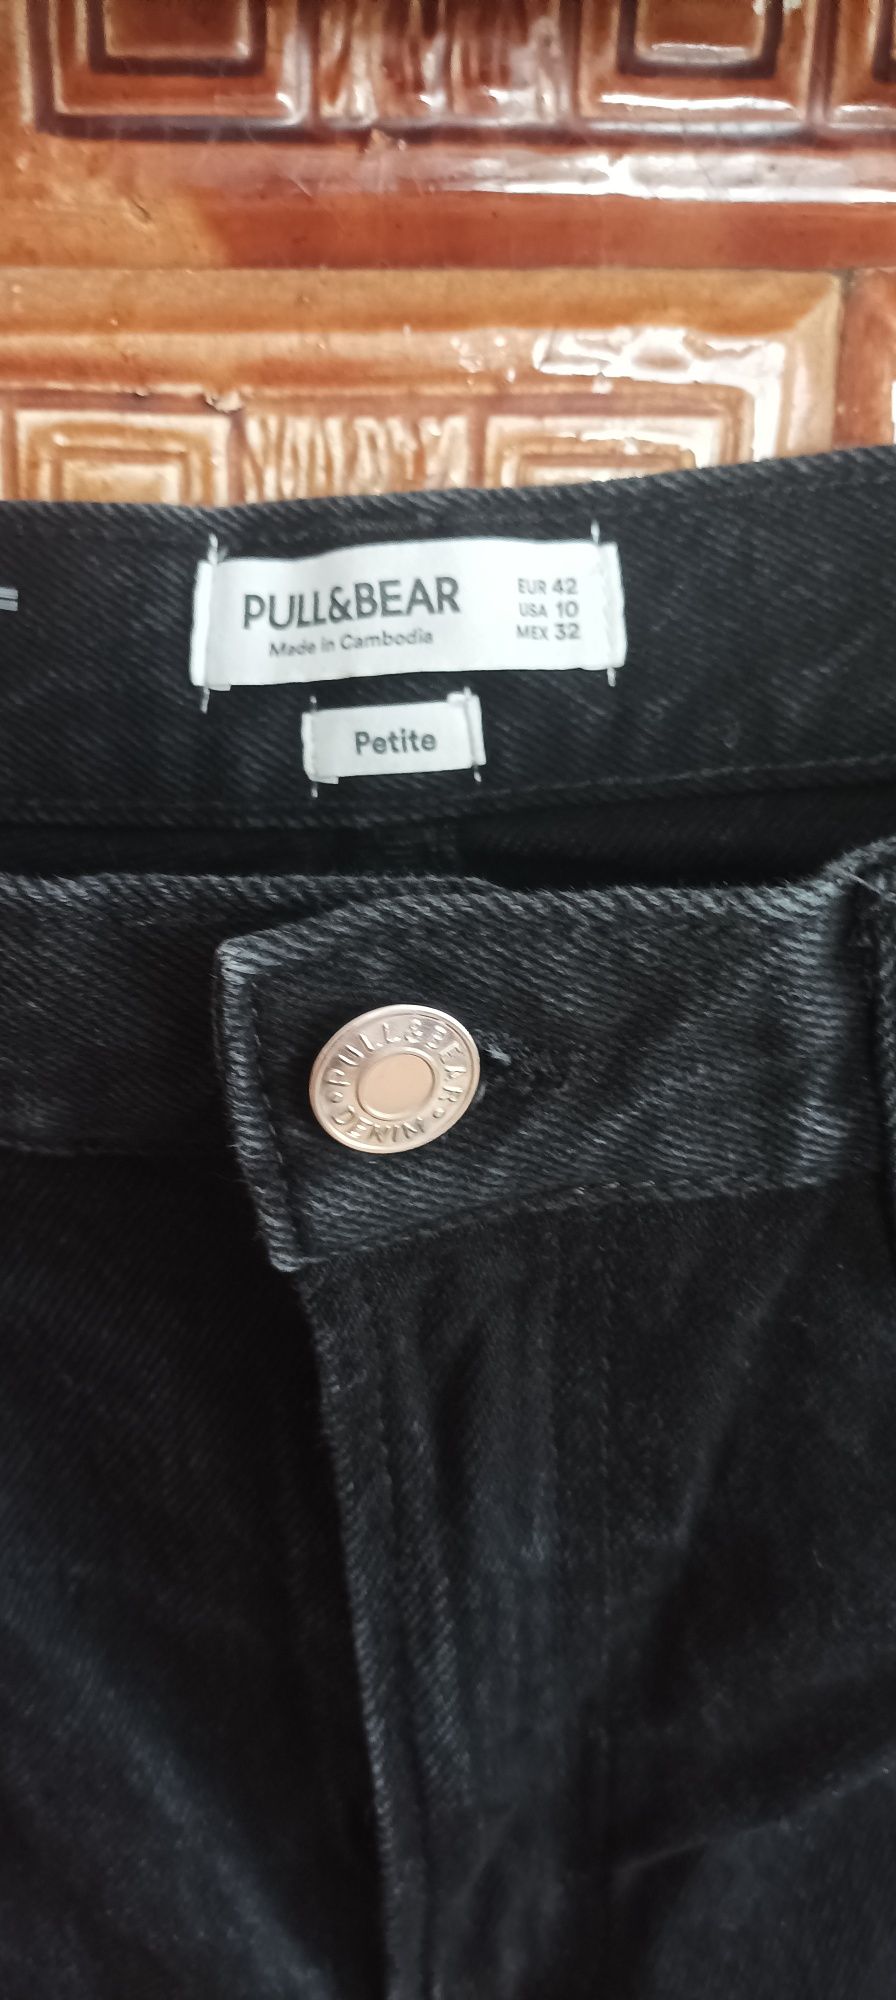 Spodnie jeansowe czarne Petite. Rozm 42 Pull&Bear.